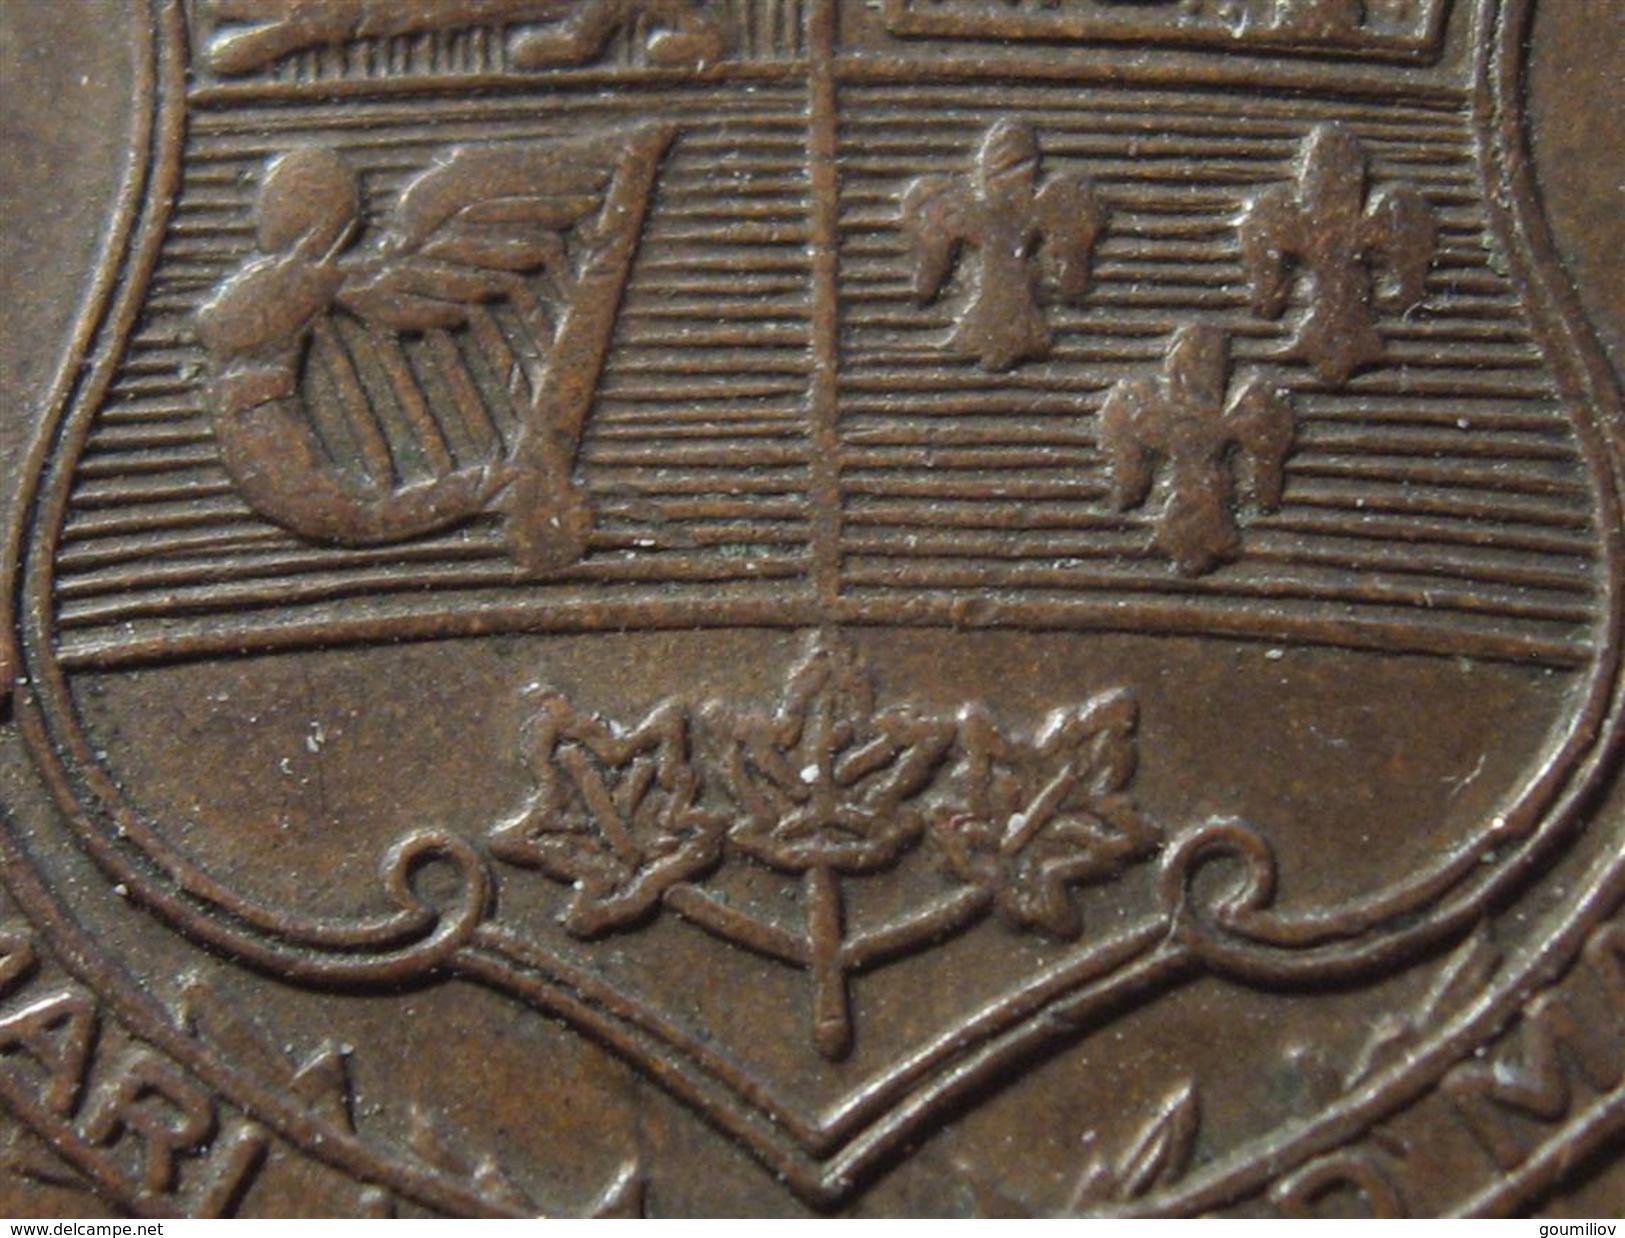 Canada - Médaille De La Confederation 1867-1927 - Superbe 0396 - Monarquía / Nobleza